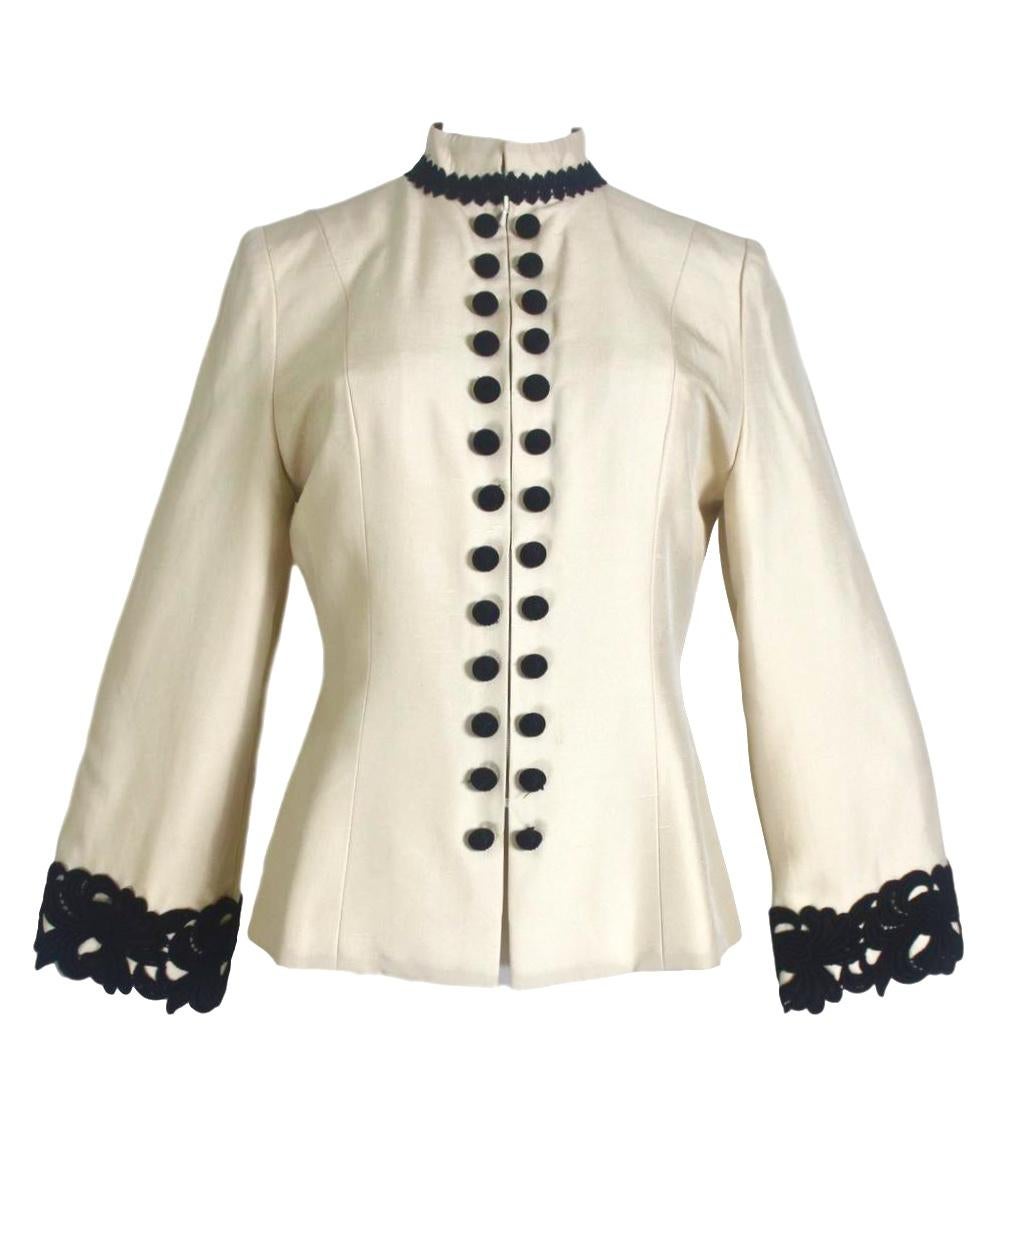 Jean-Louis Scherrer Couture
Silk Jacket
Button Decoration
Hidden Zip Fastener
Labelled Size 40